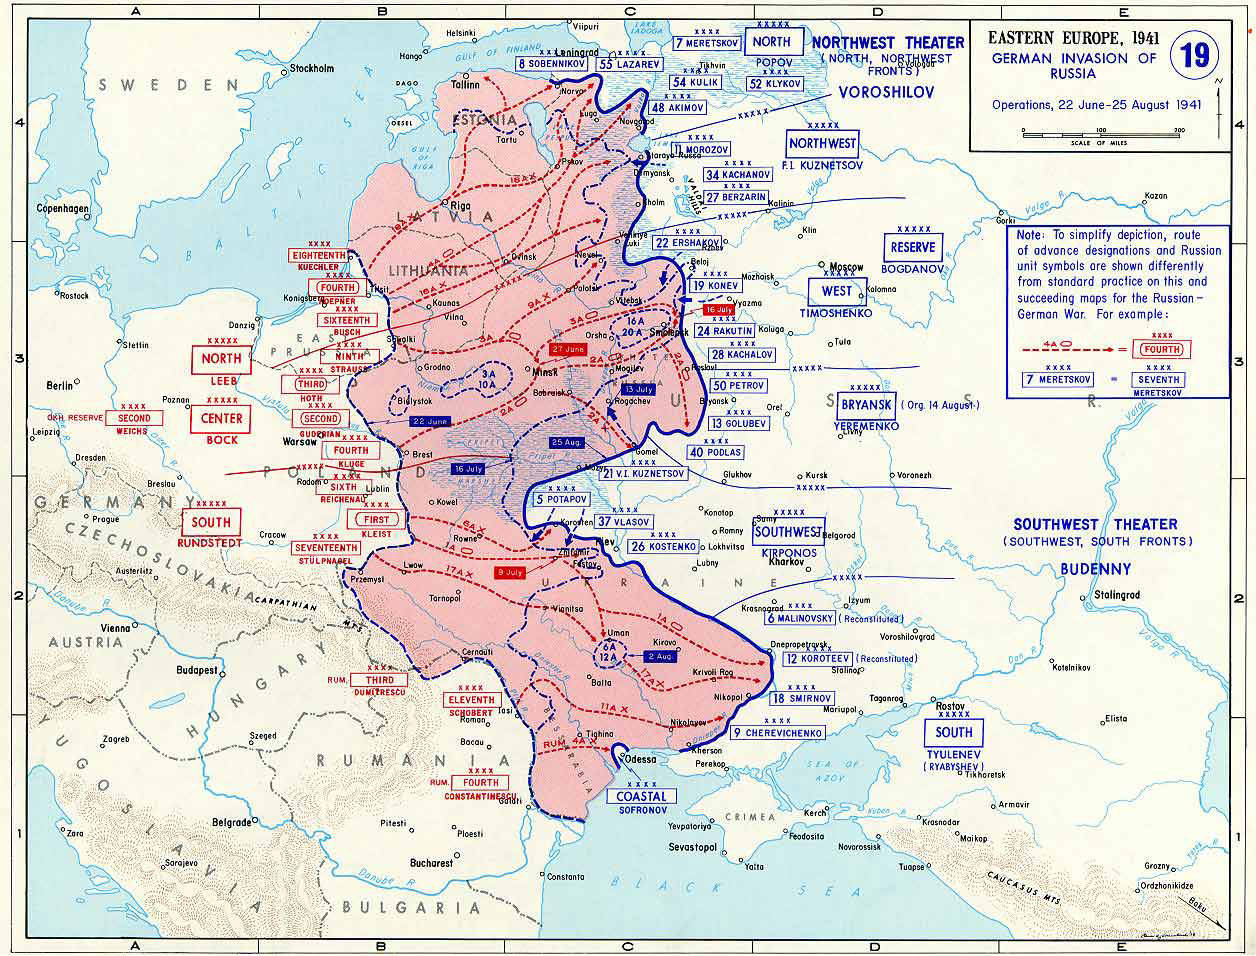 Реферат по теме Великая Отечественная война: контрудар под Сольцами и операции в районе Старой Руссы